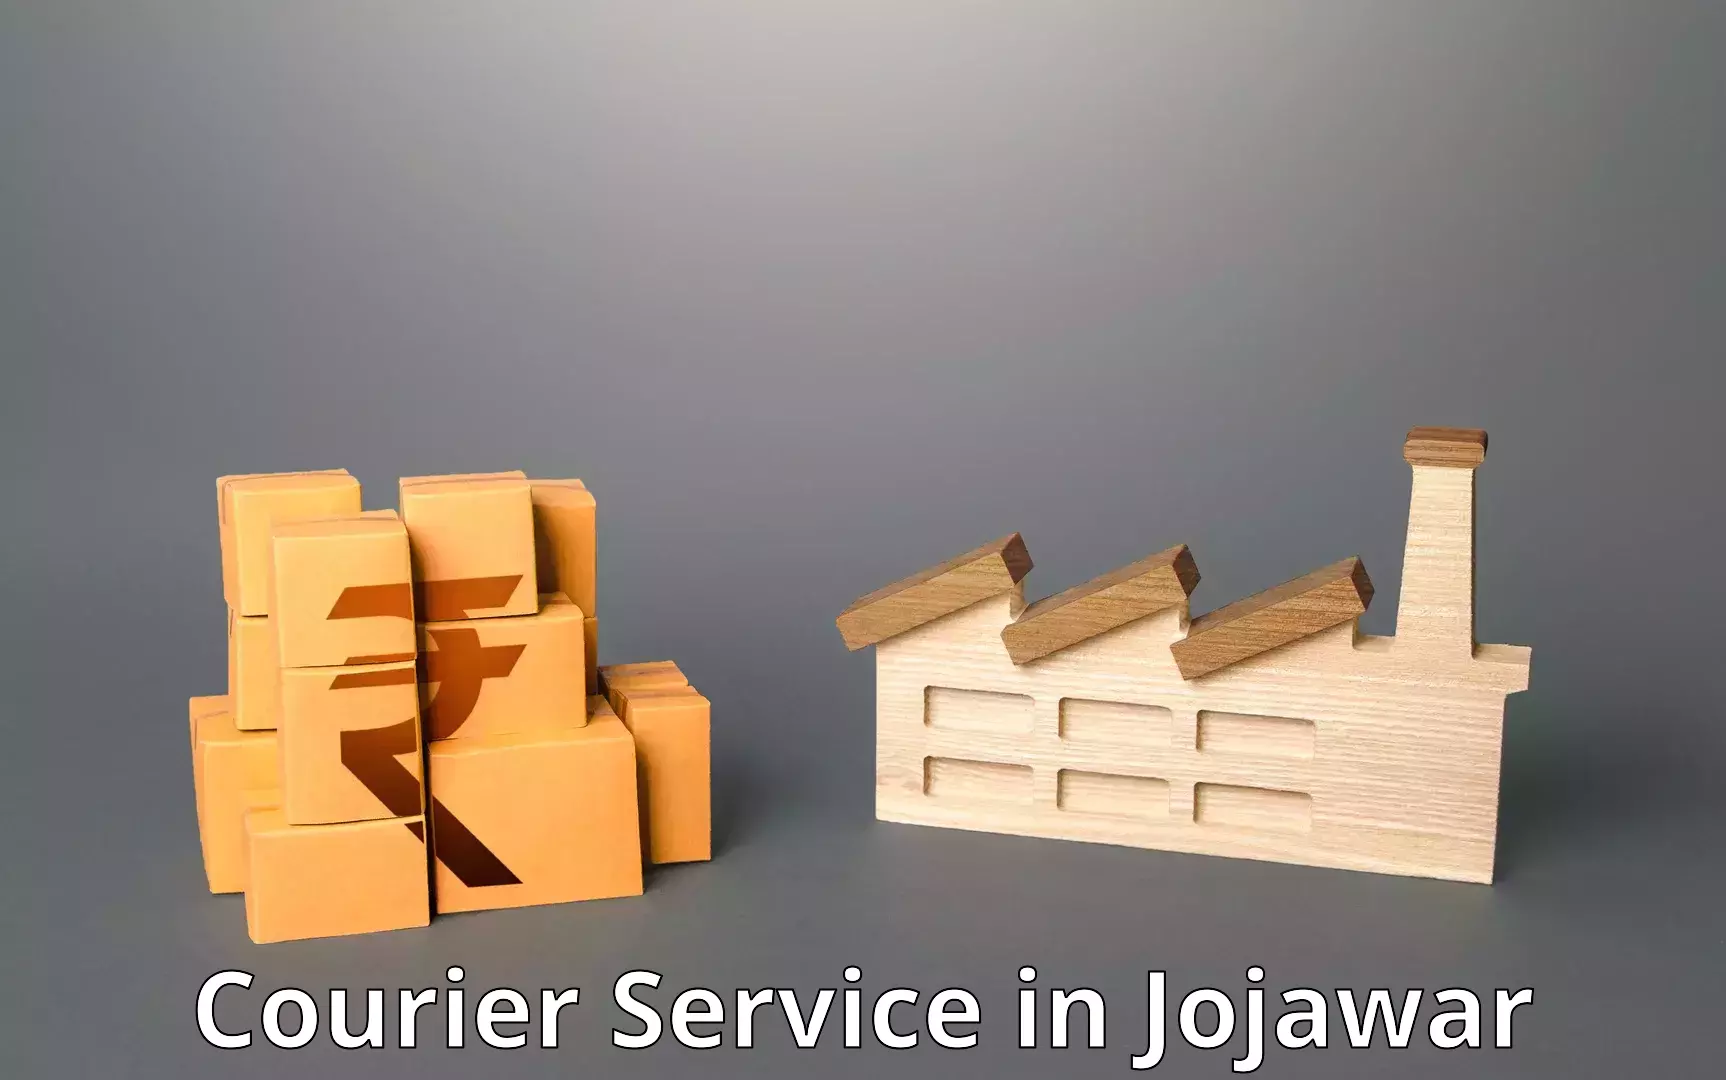 Smart logistics strategies in Jojawar